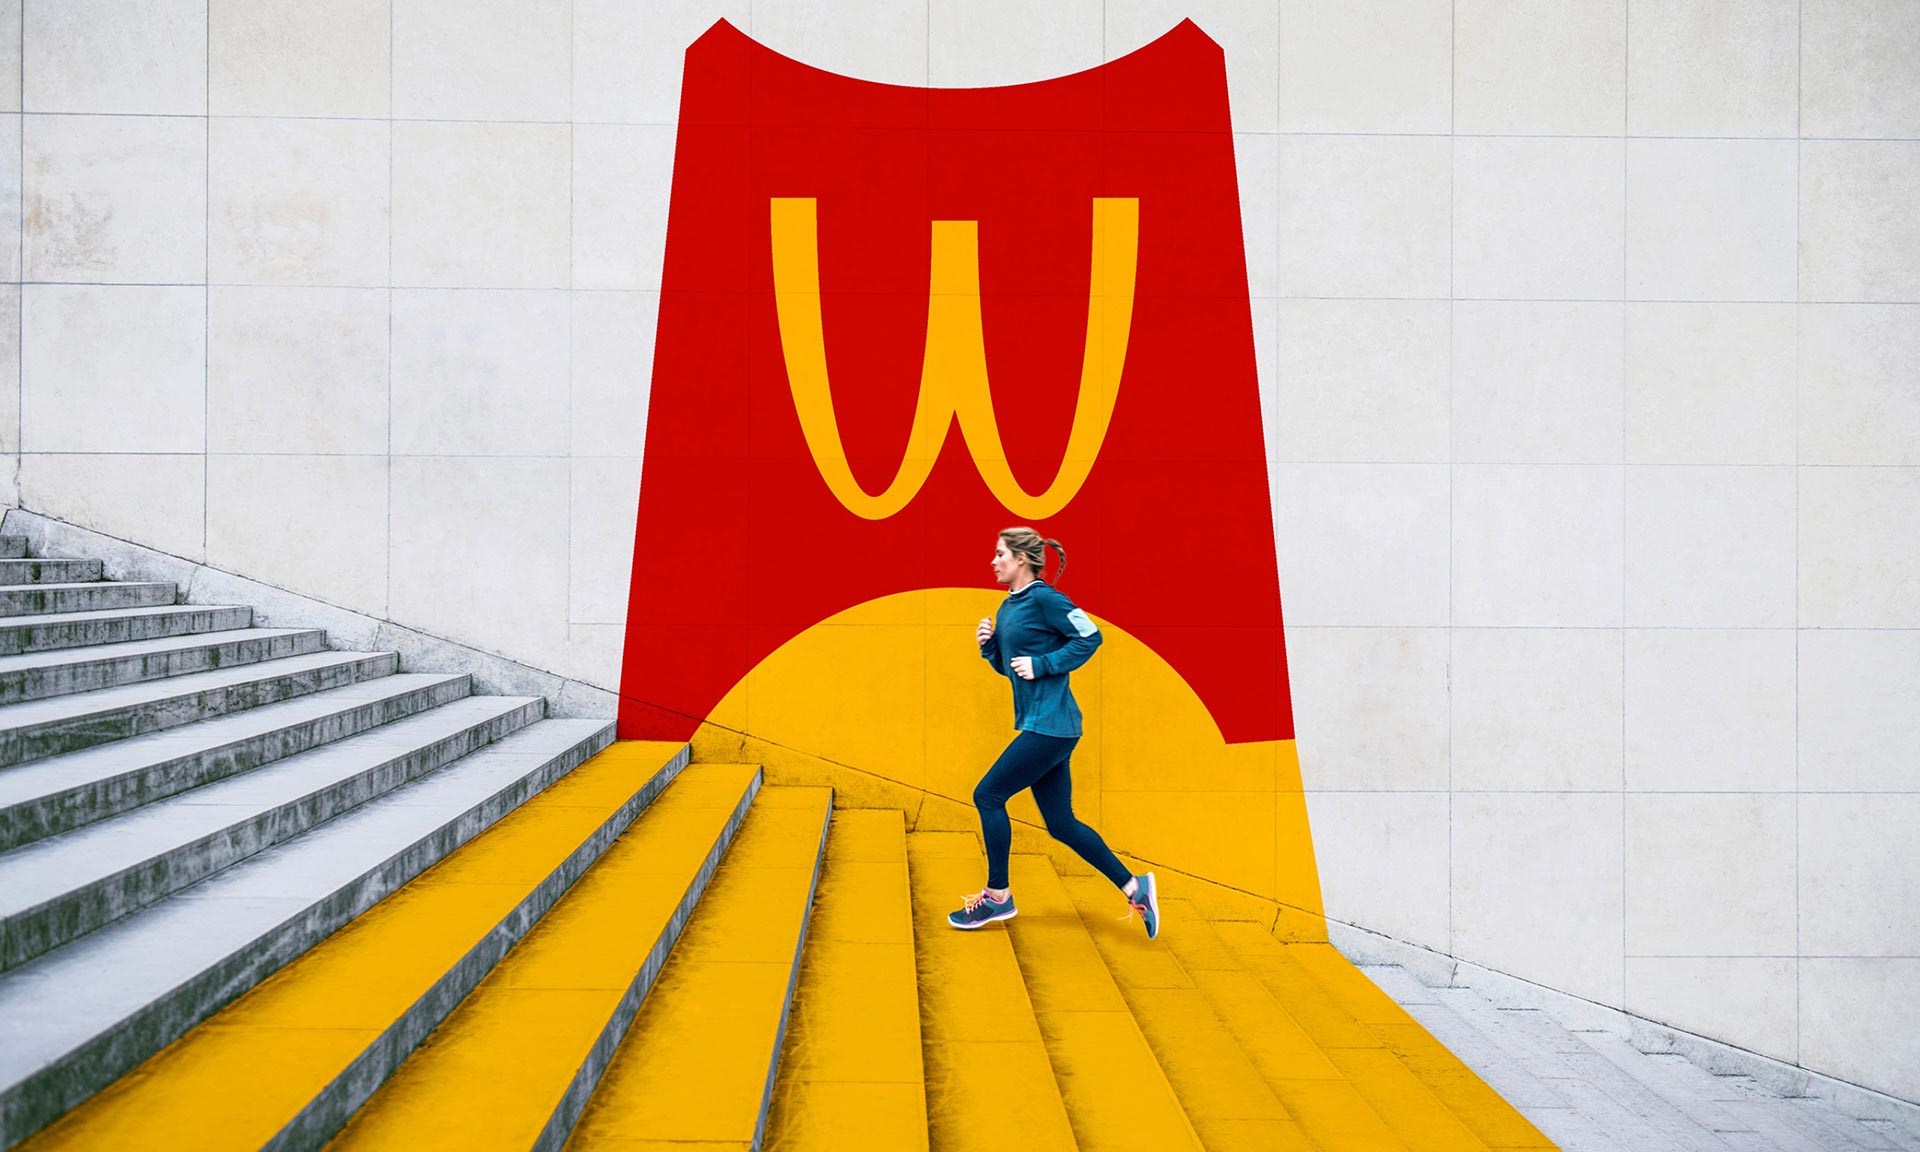 Turner Duckworth omladili vizuální identitu síti restaurací McDonald’s